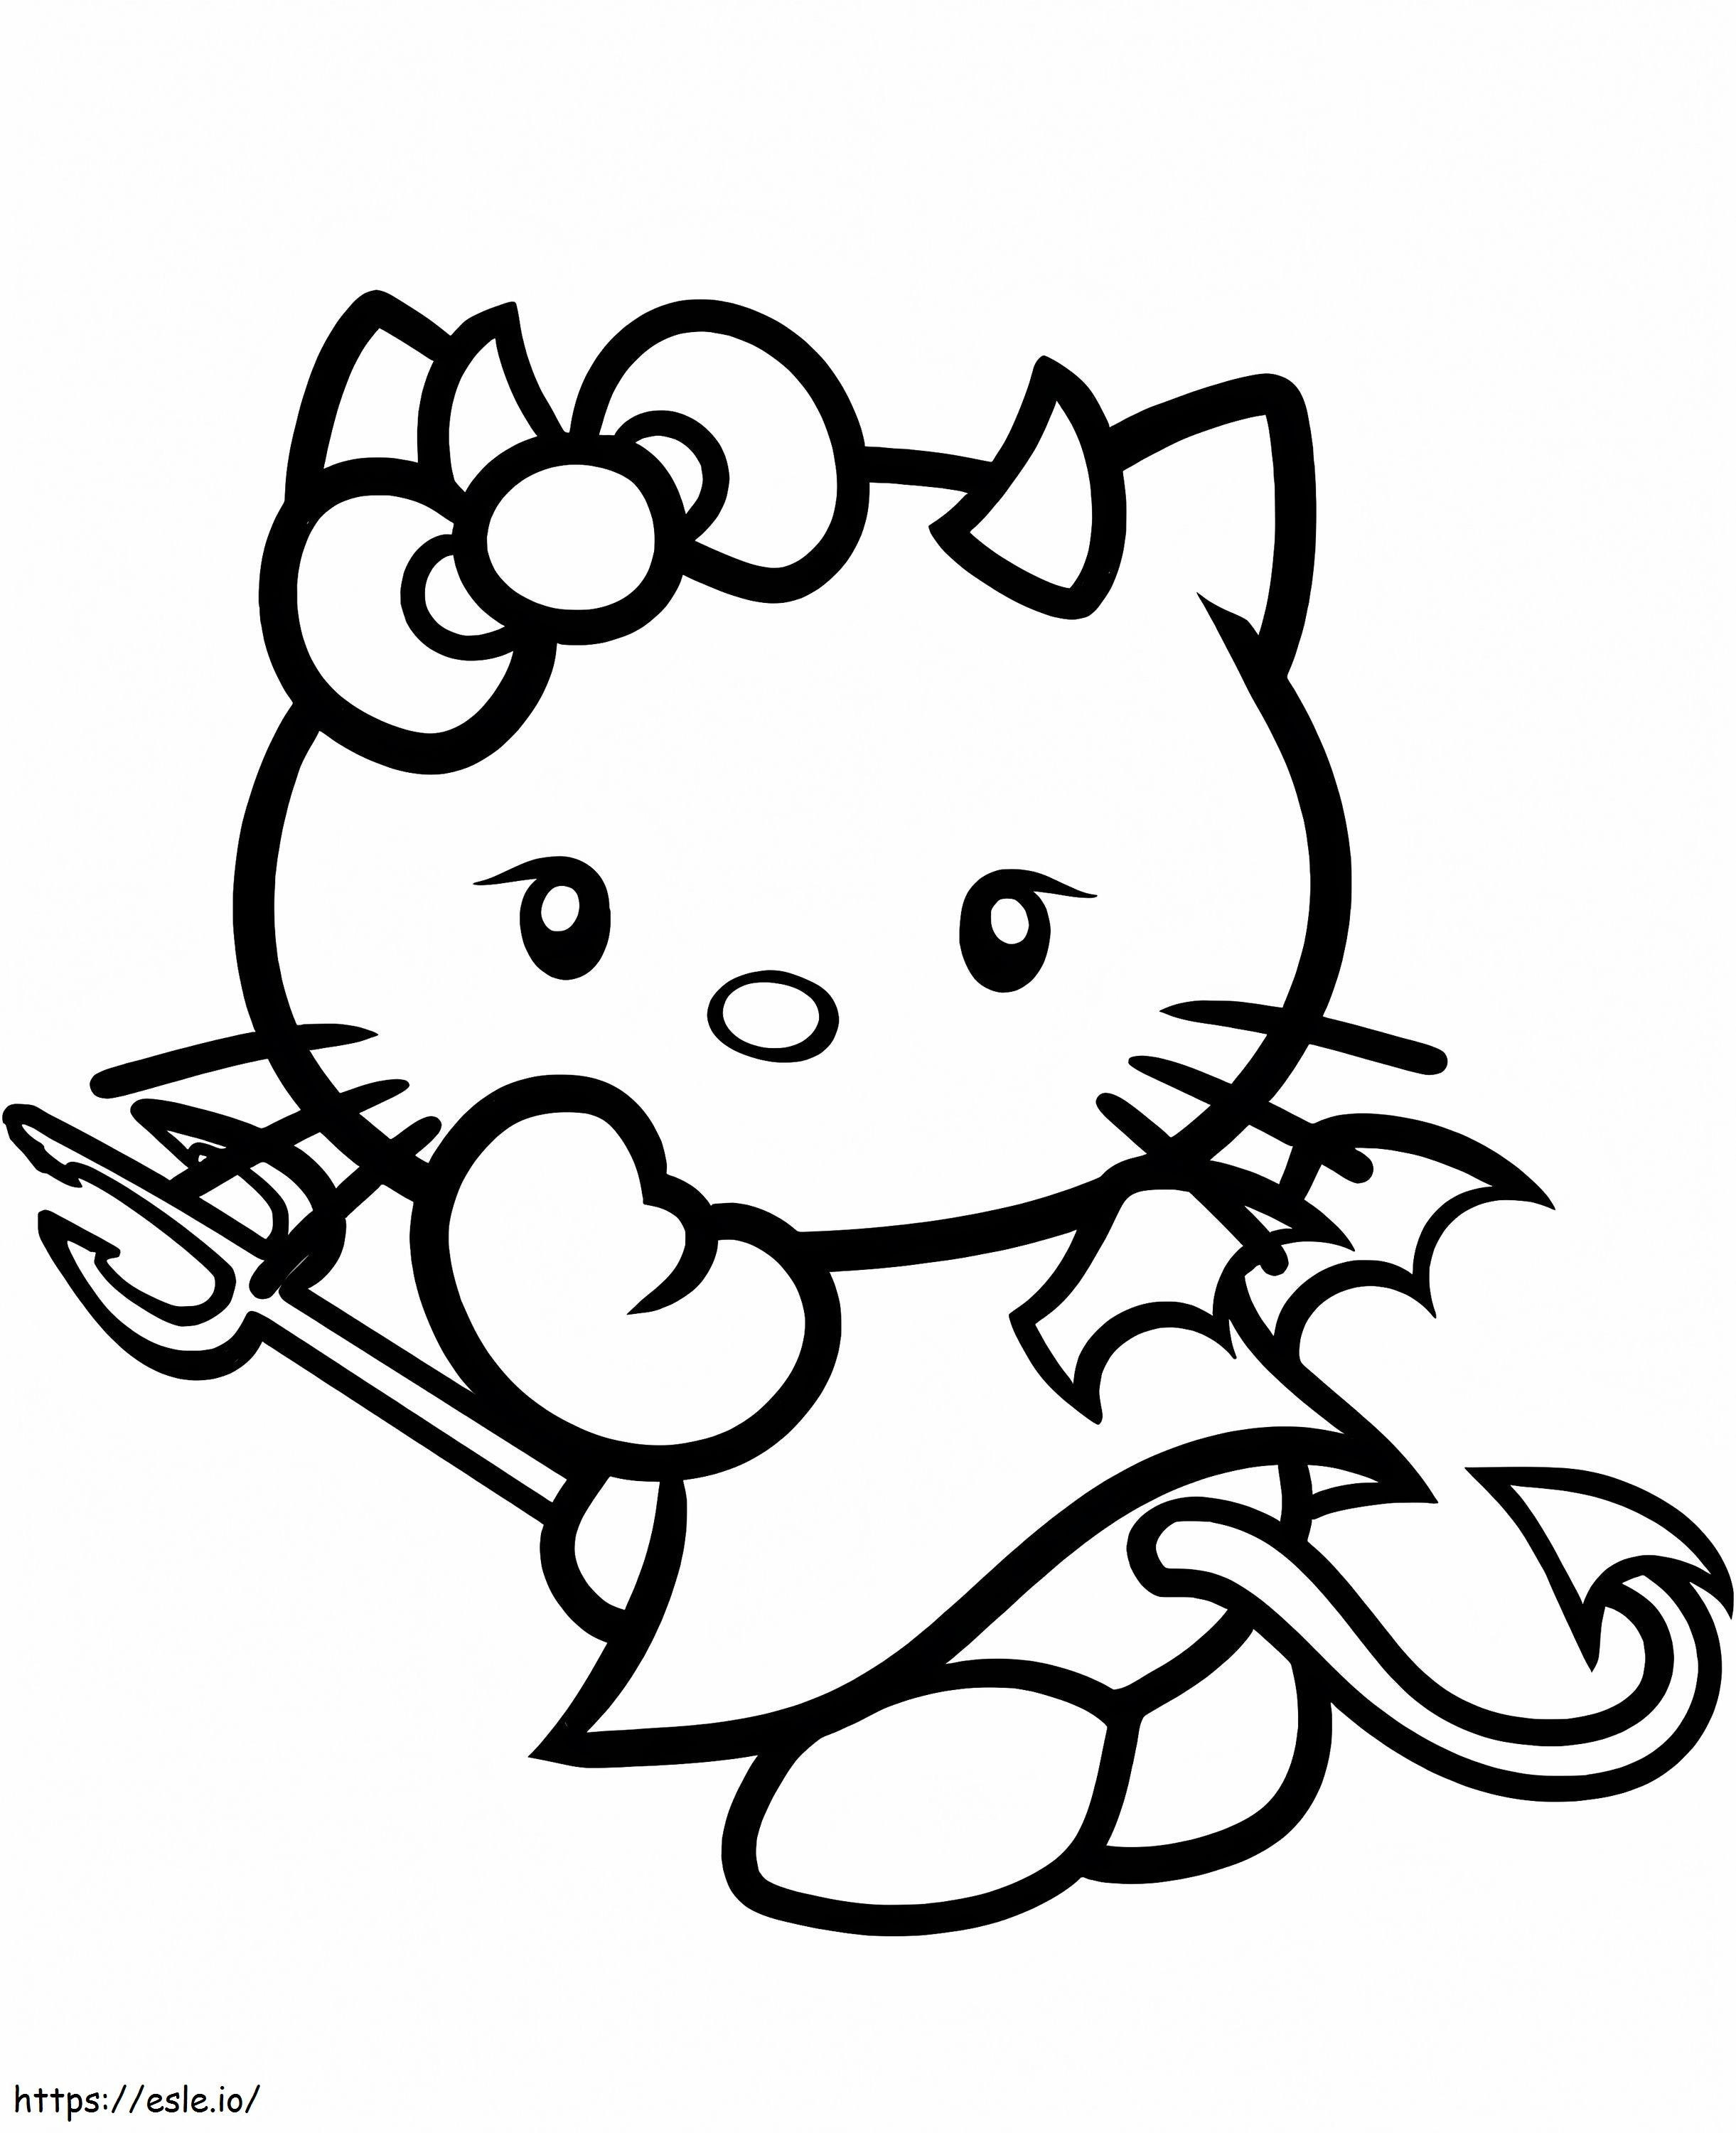 Diablo Hello Kitty da colorare